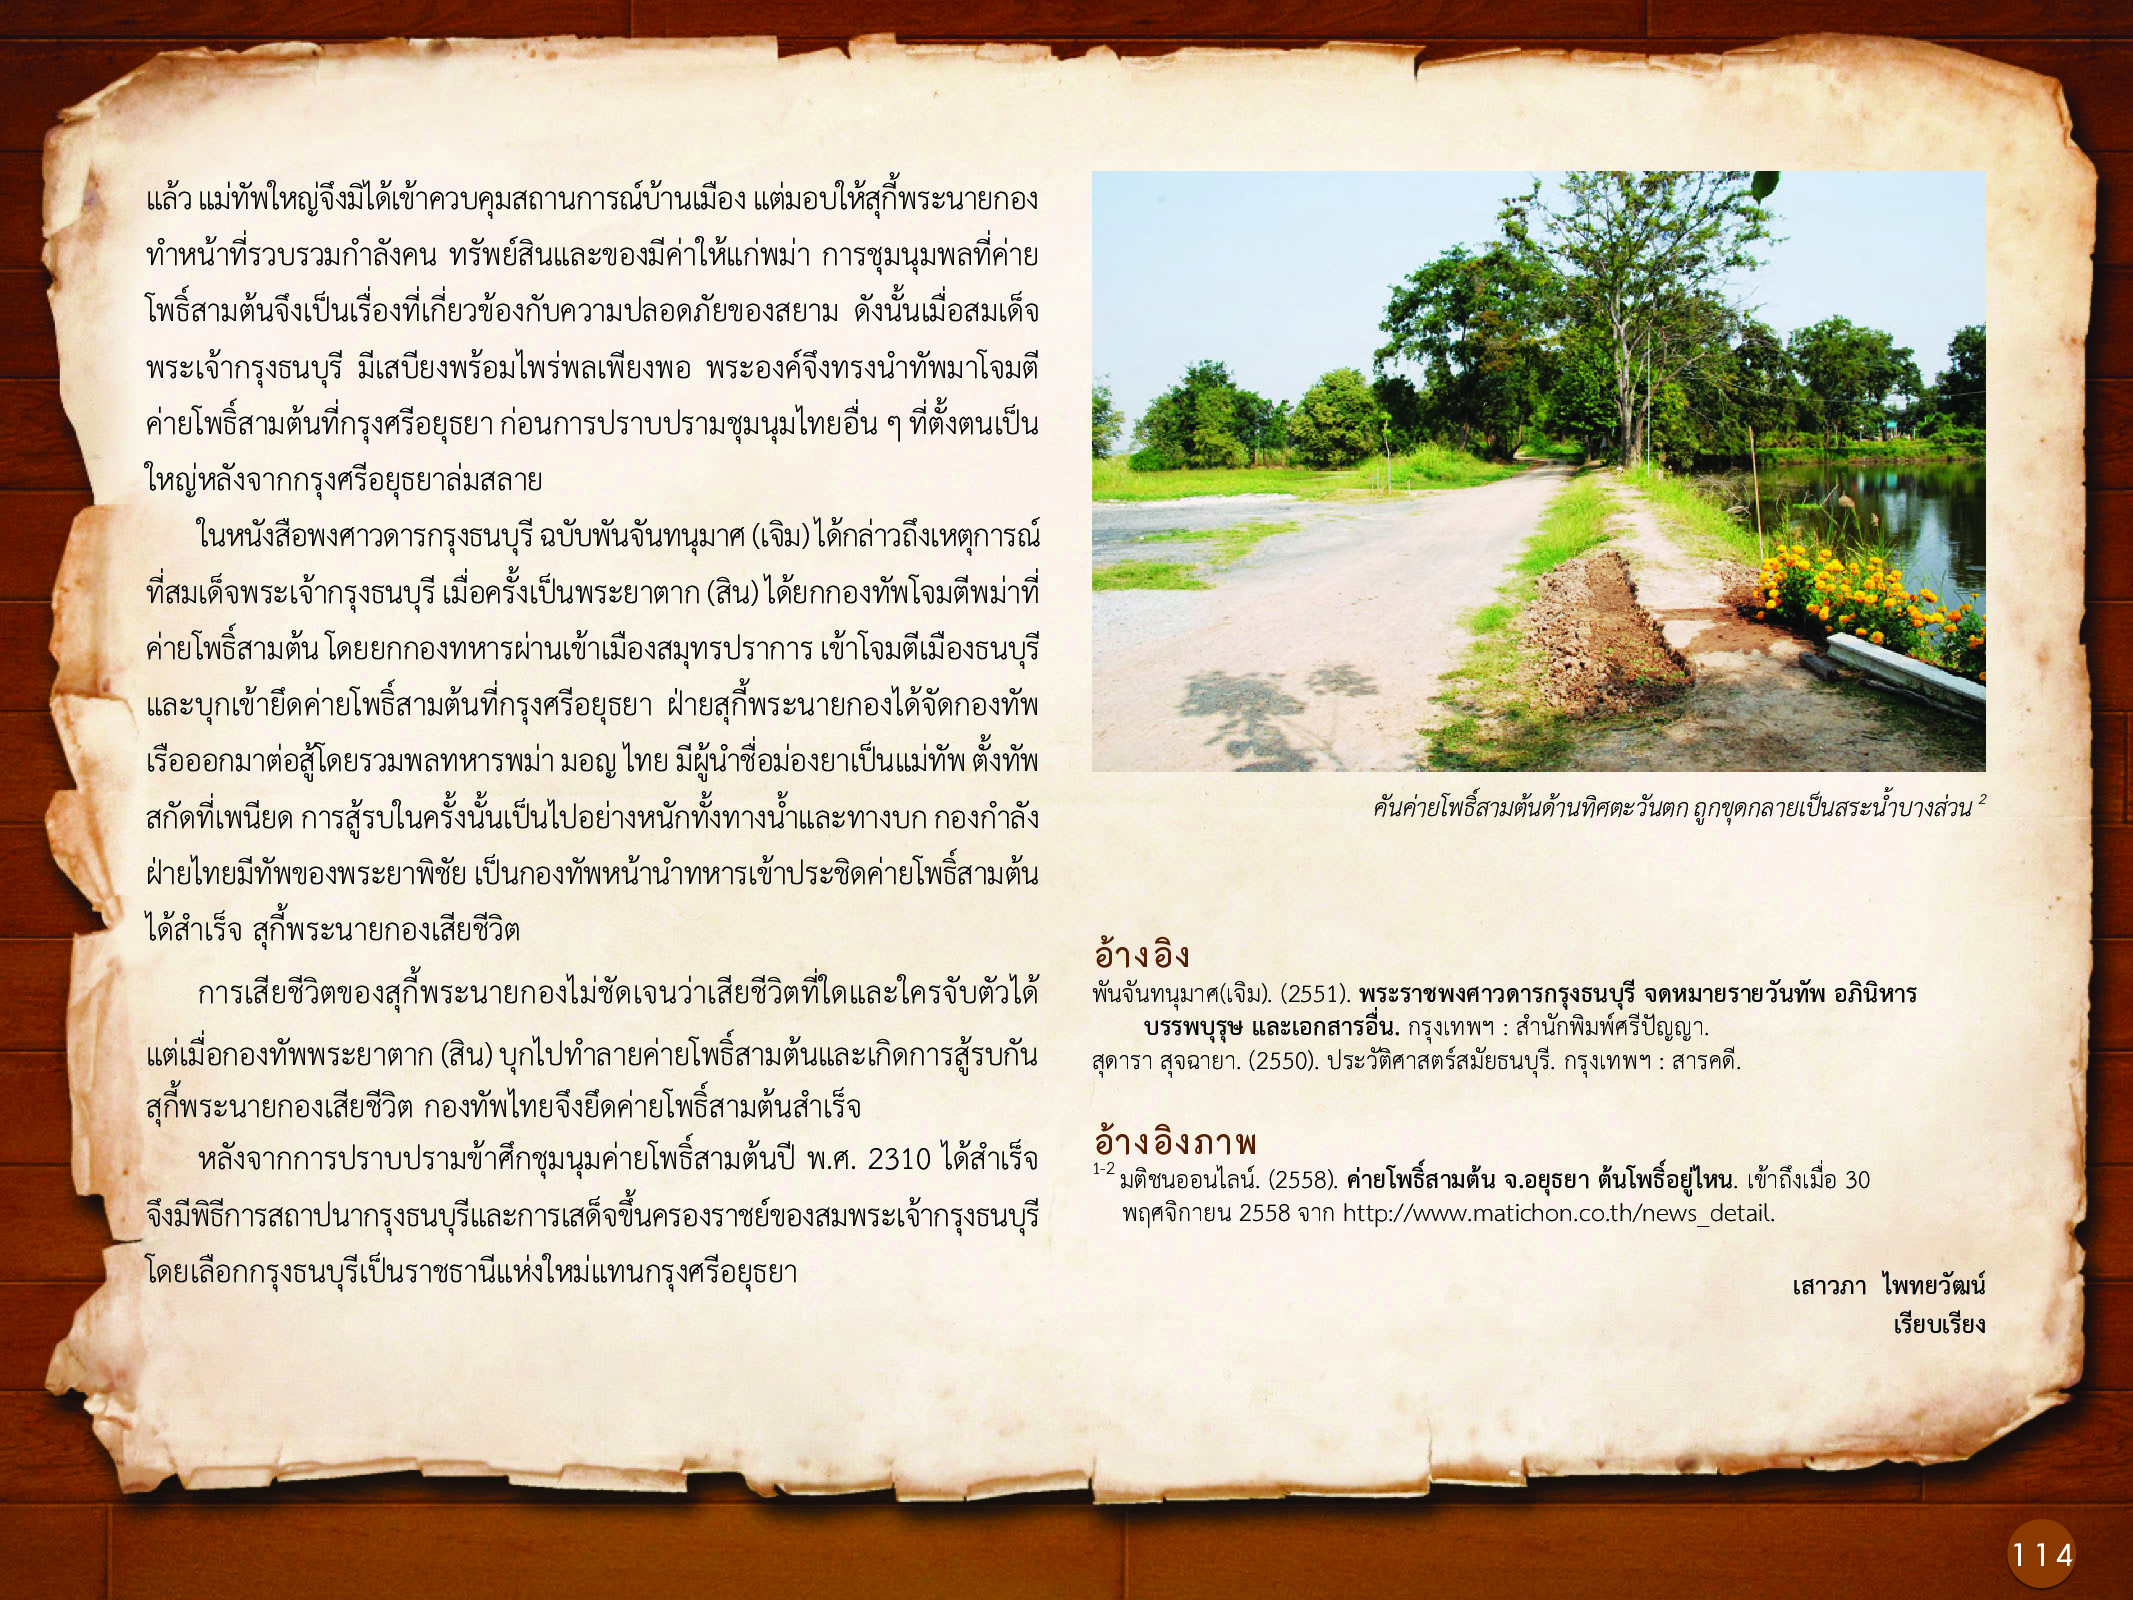 ประวัติศาสตร์กรุงธนบุรี ./images/history_dhonburi/114.jpg